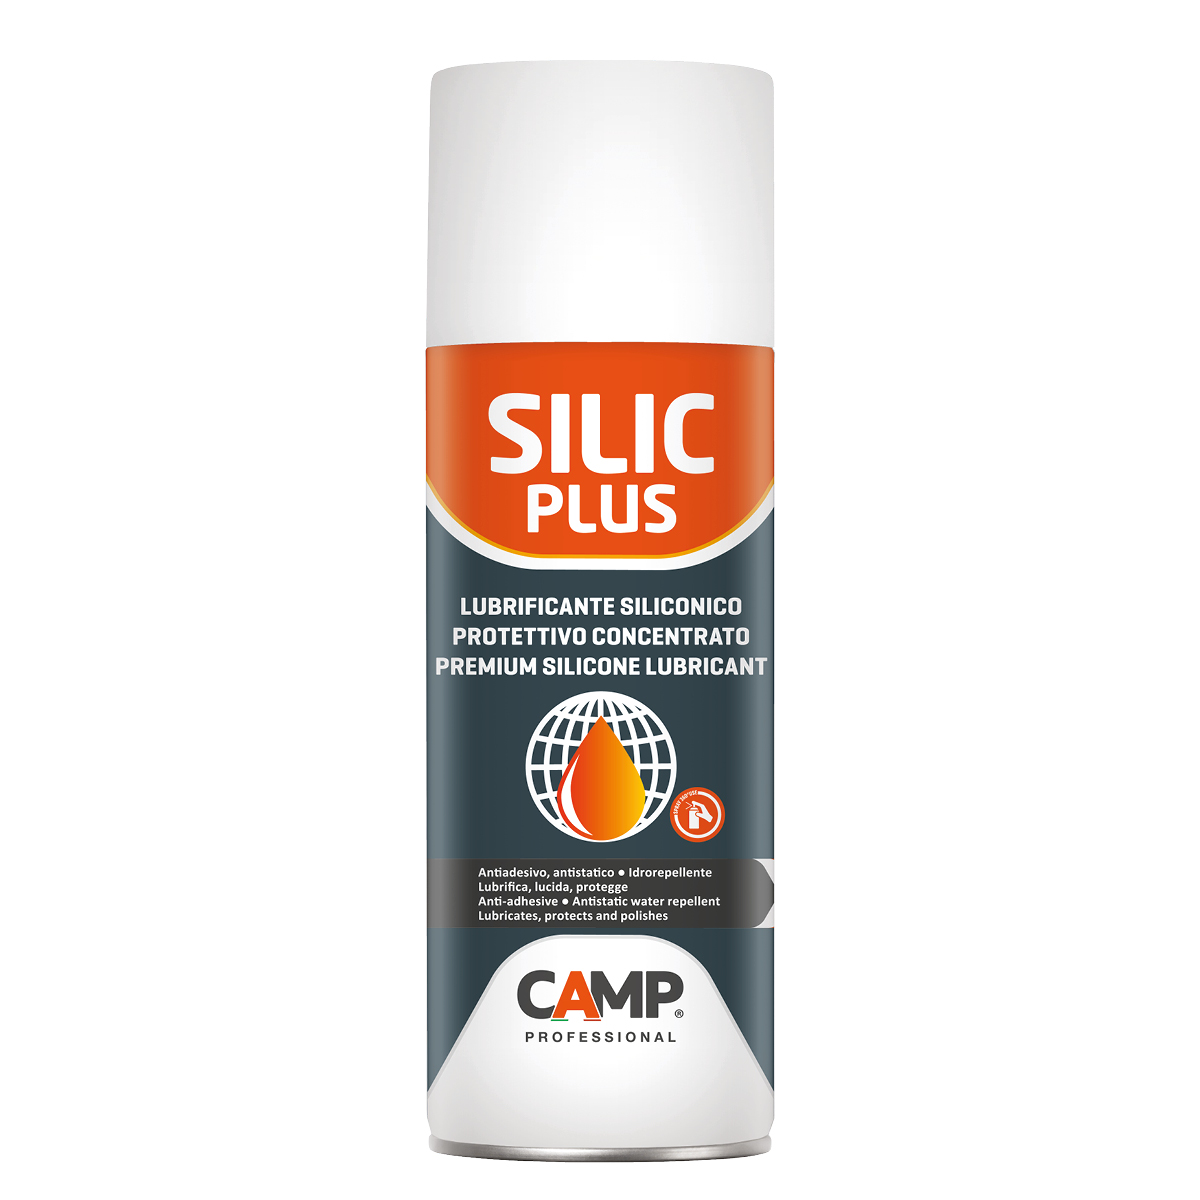 Lubrificante siliconico Silic Plus – Gruppo Bruno